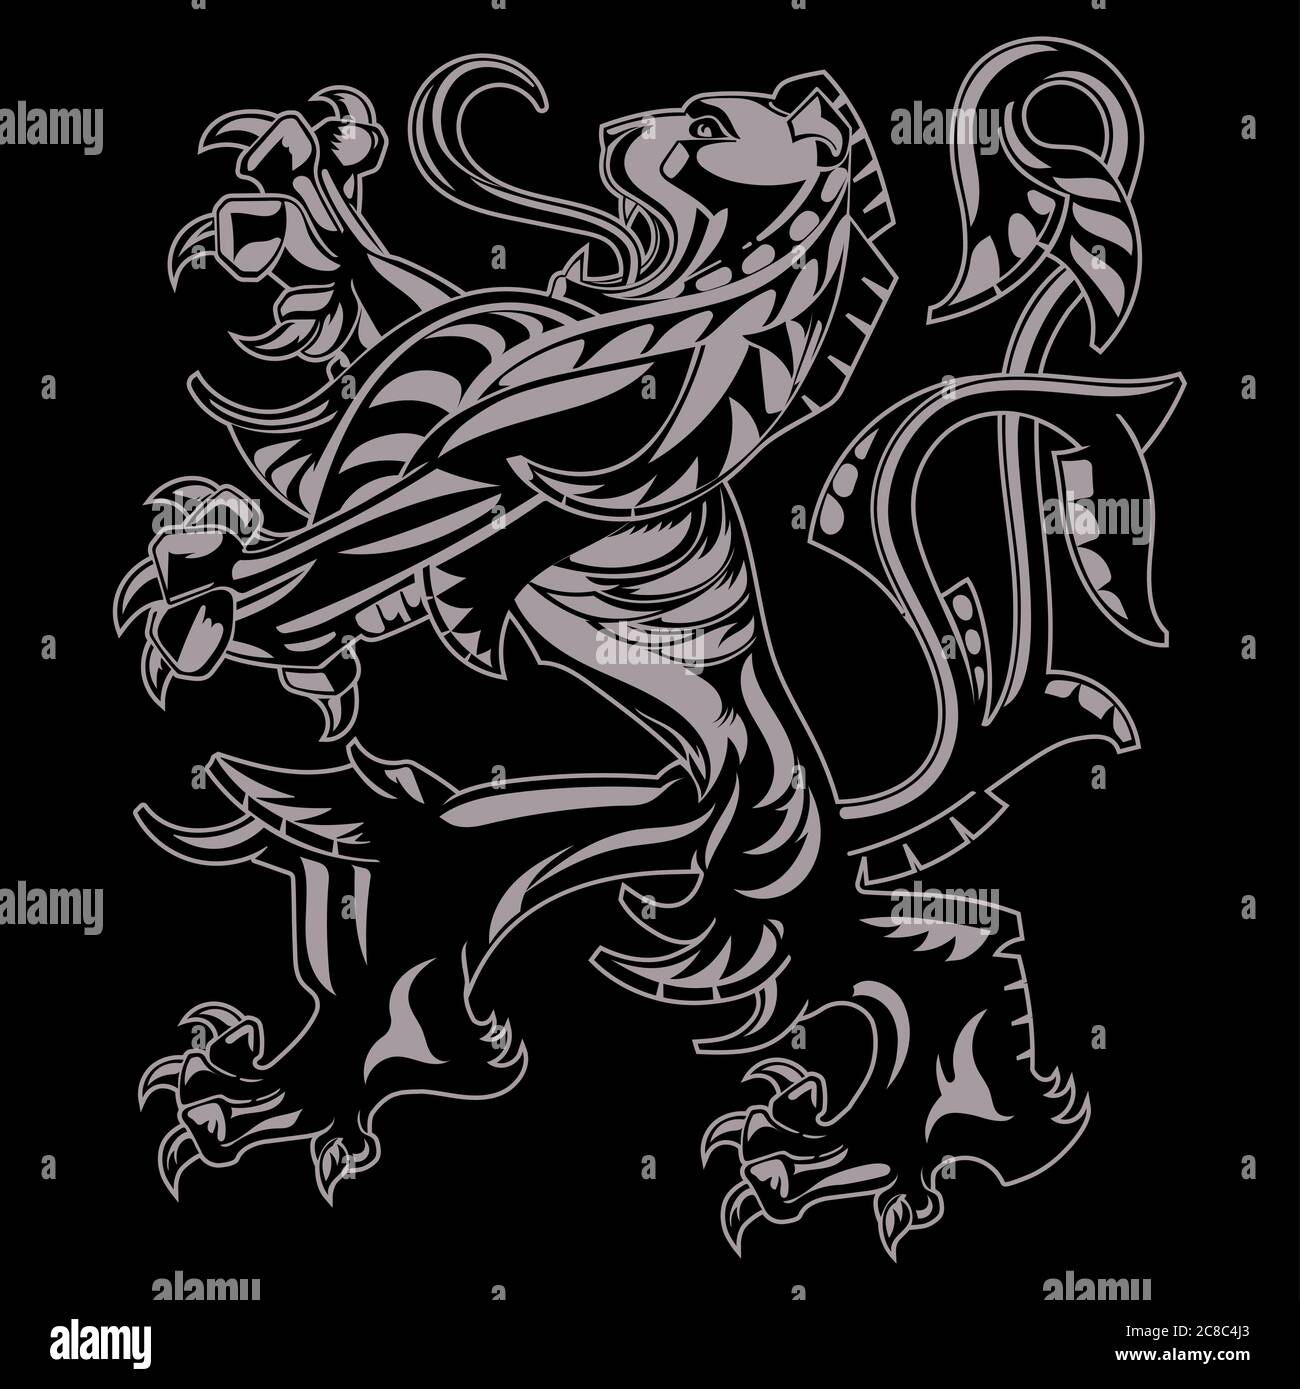 Un escudo heráldico medieval de brazos, león heráldico, silueta heráldica del león Ilustración del Vector